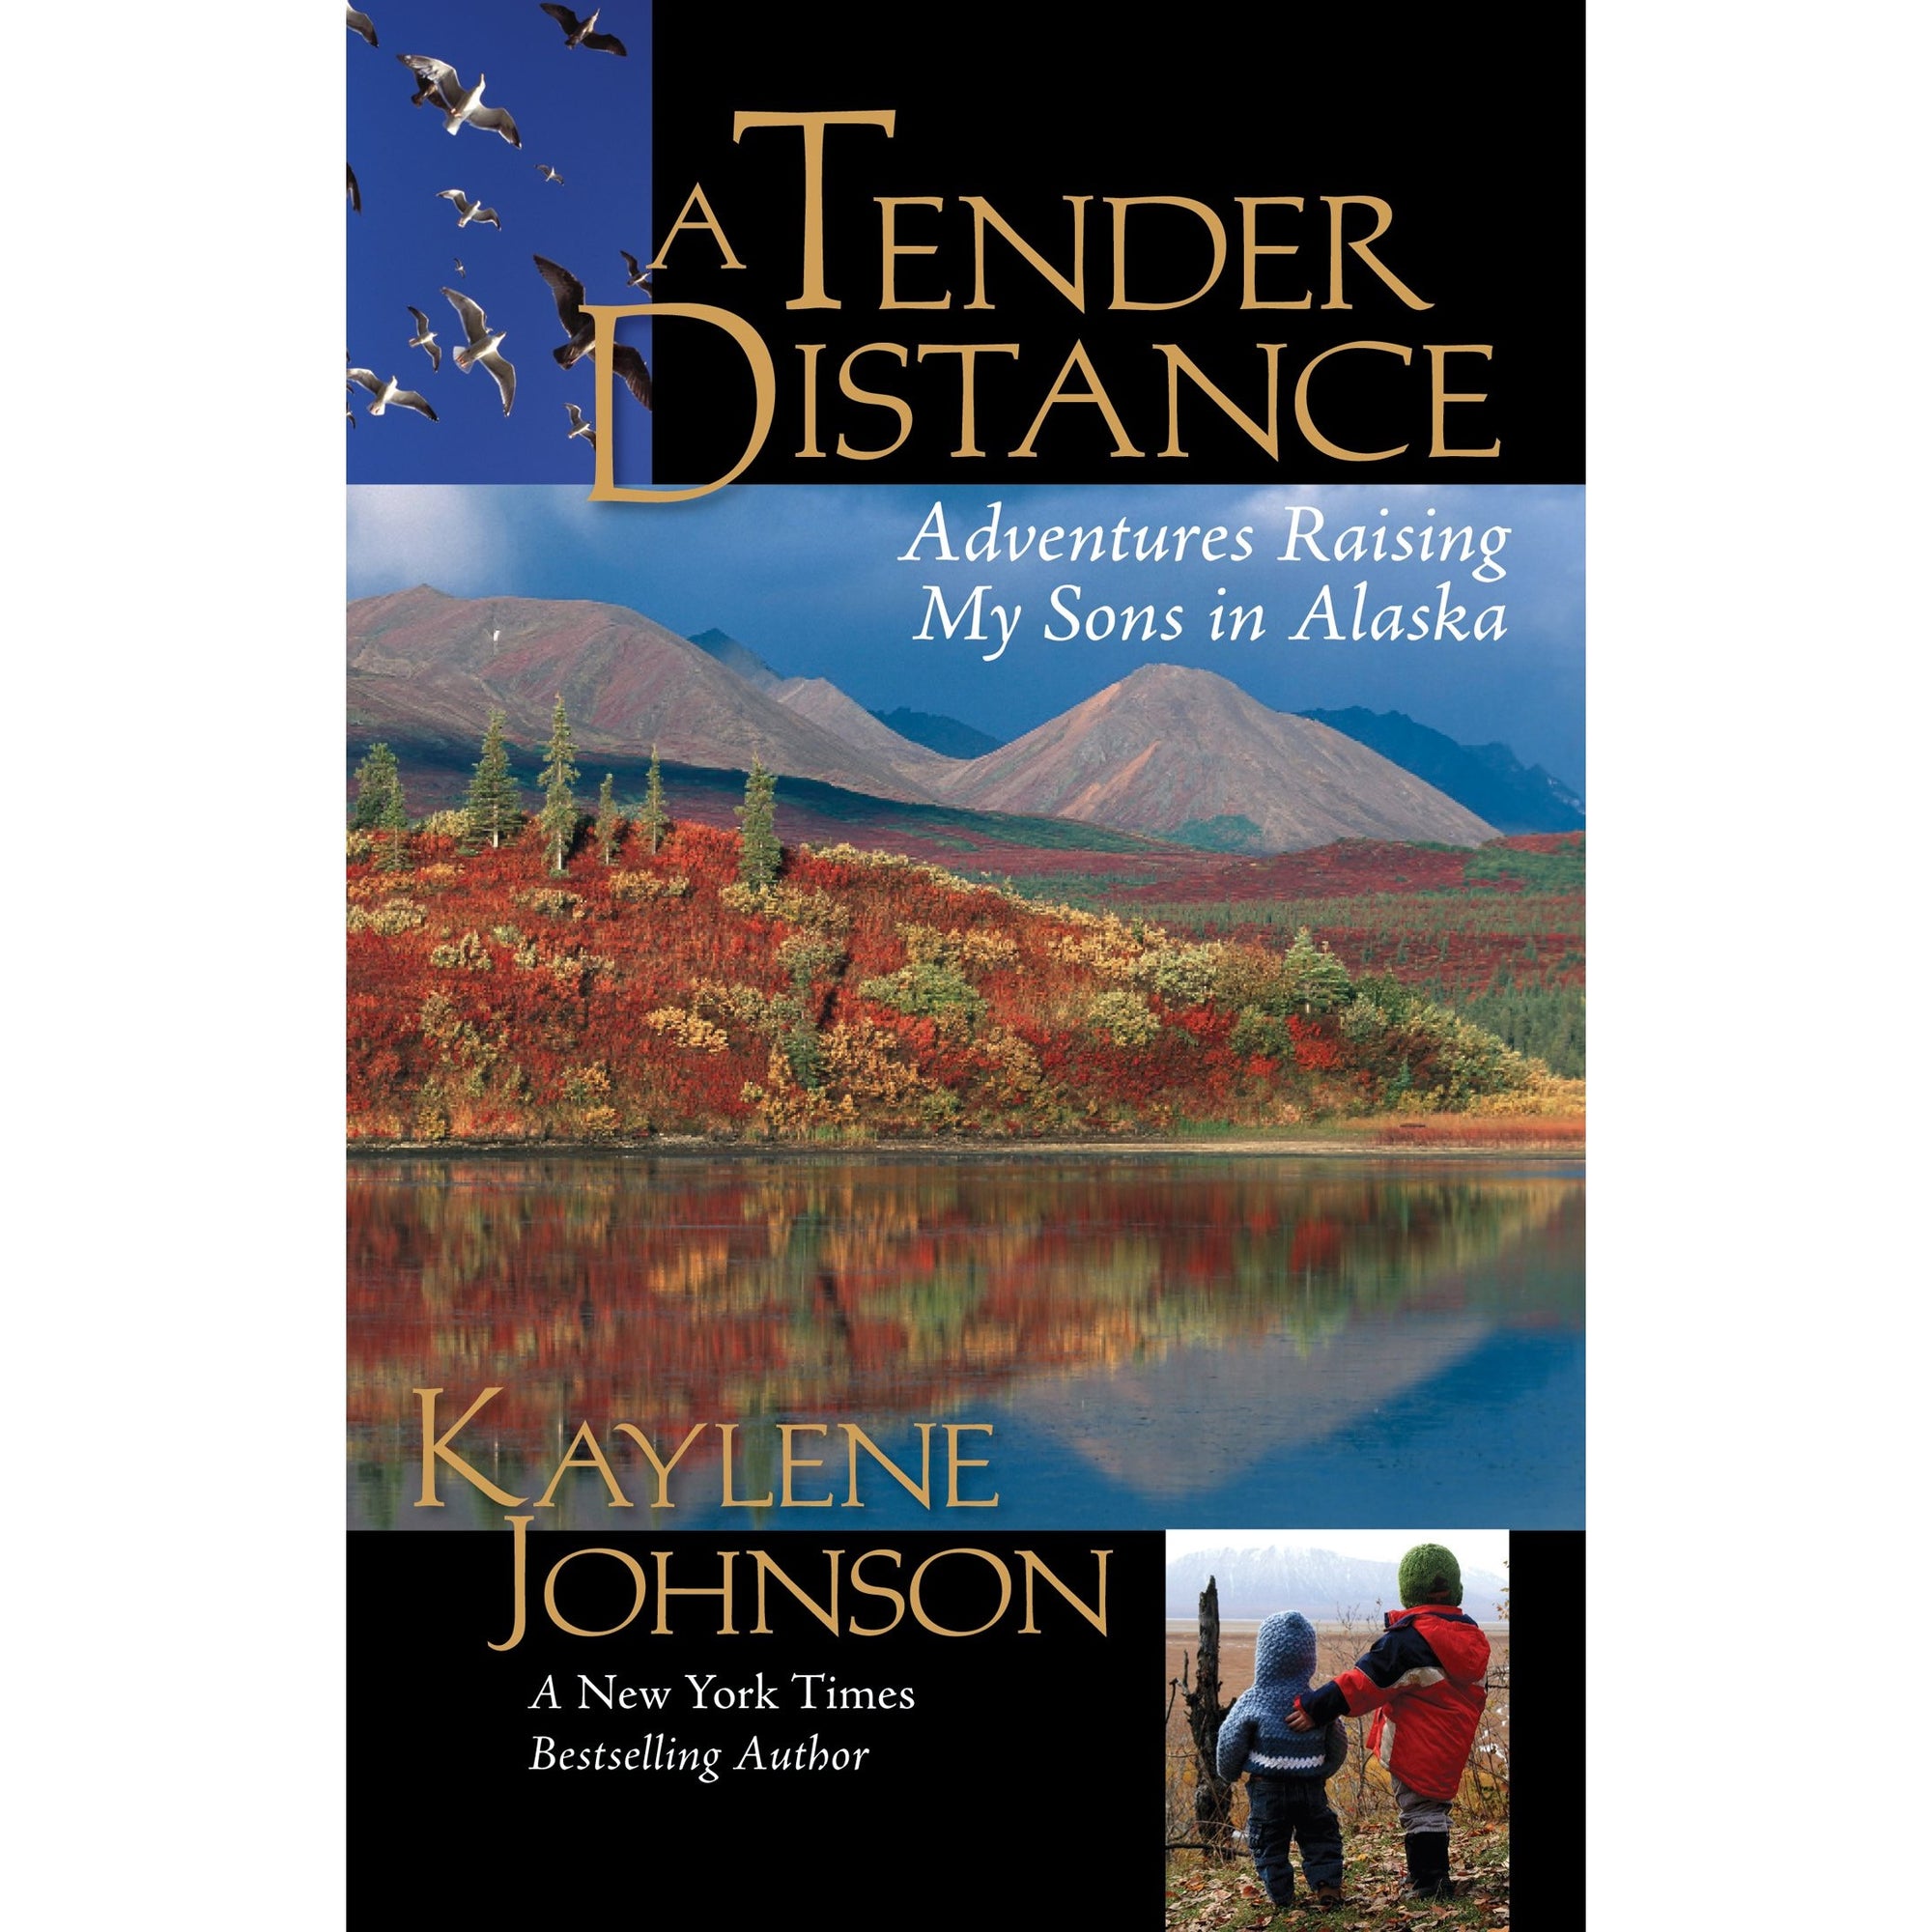 A Tender Distance